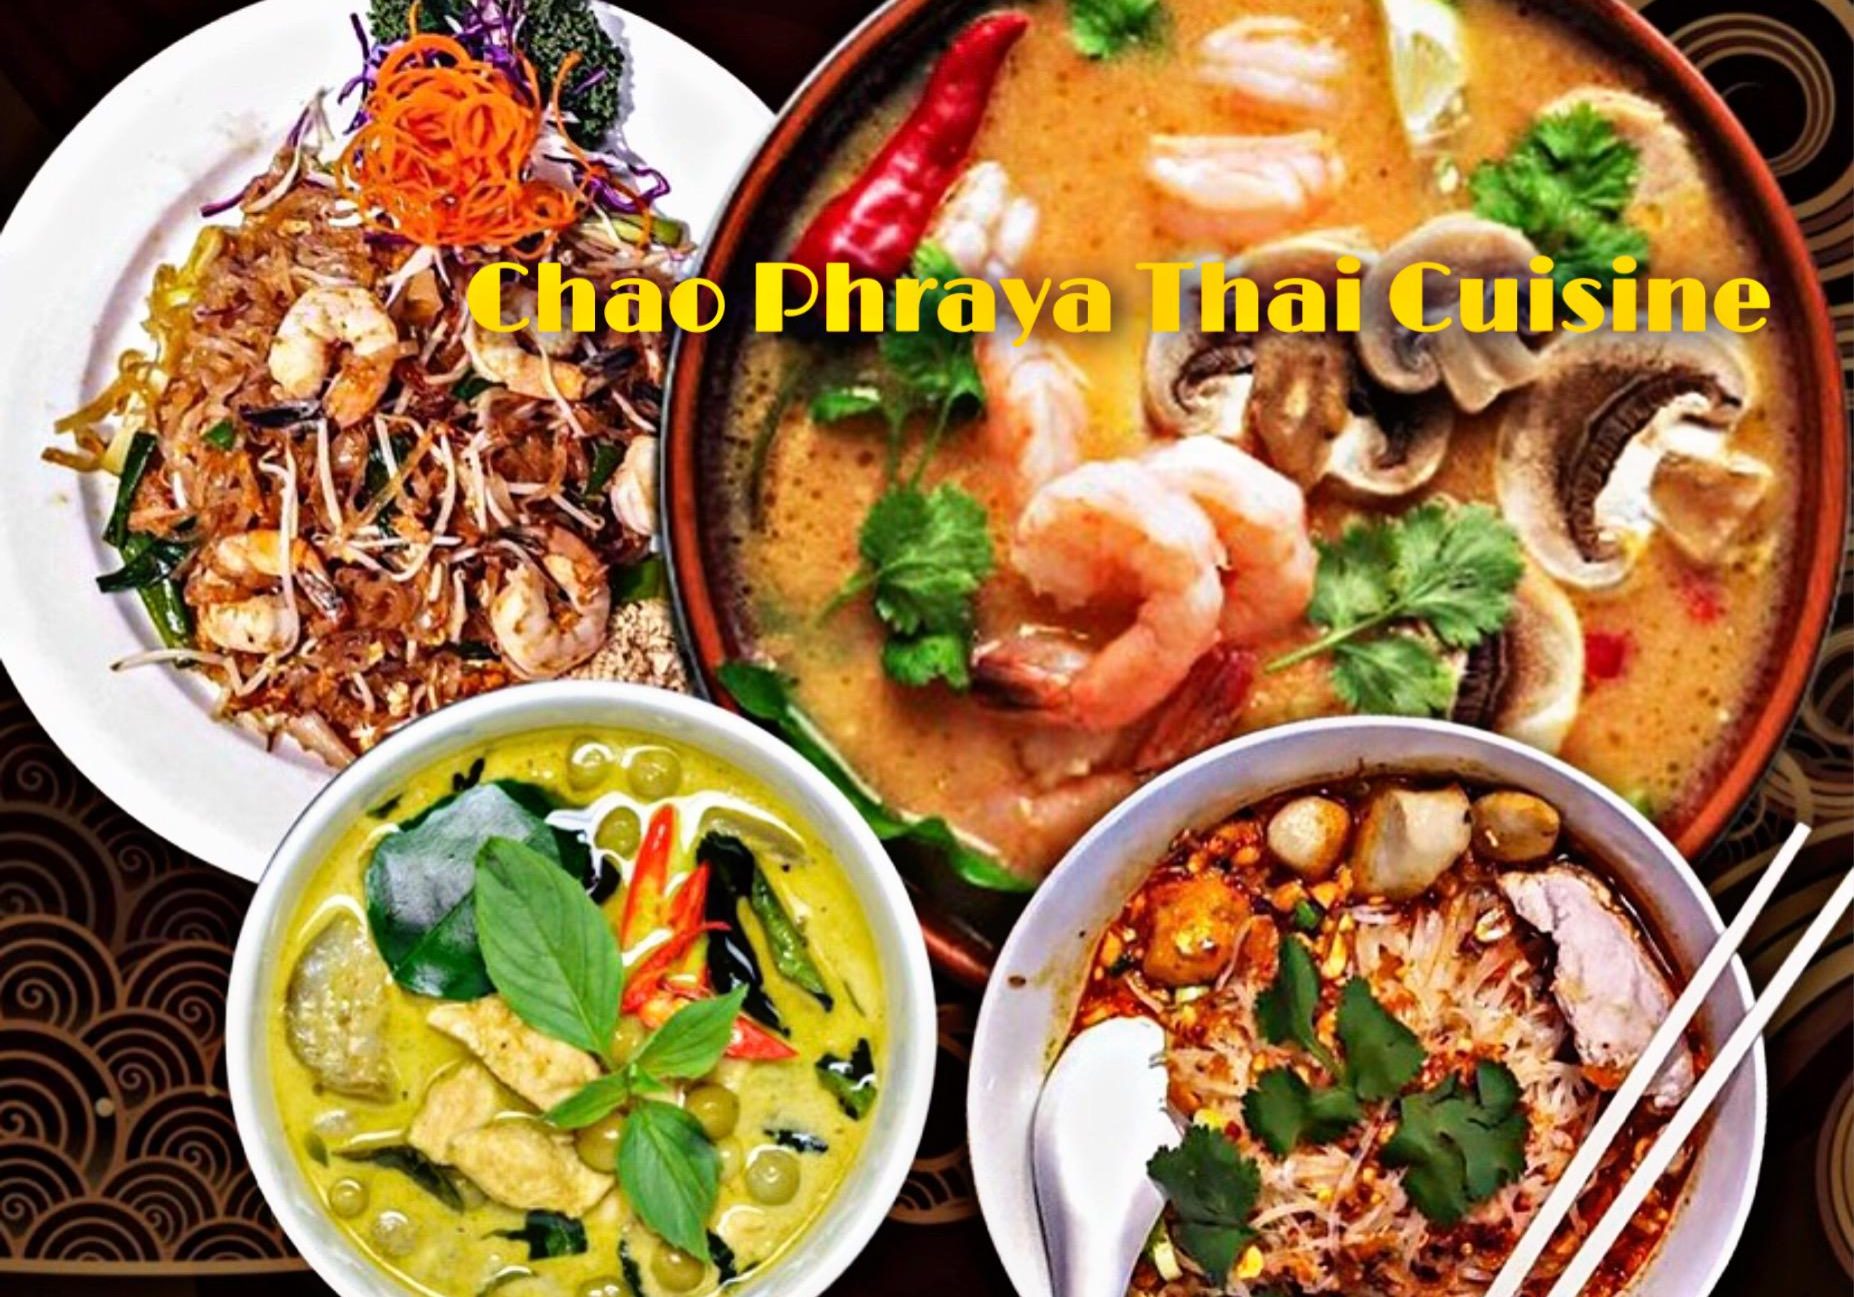 Chao-Phraya-Thai-Cuisine